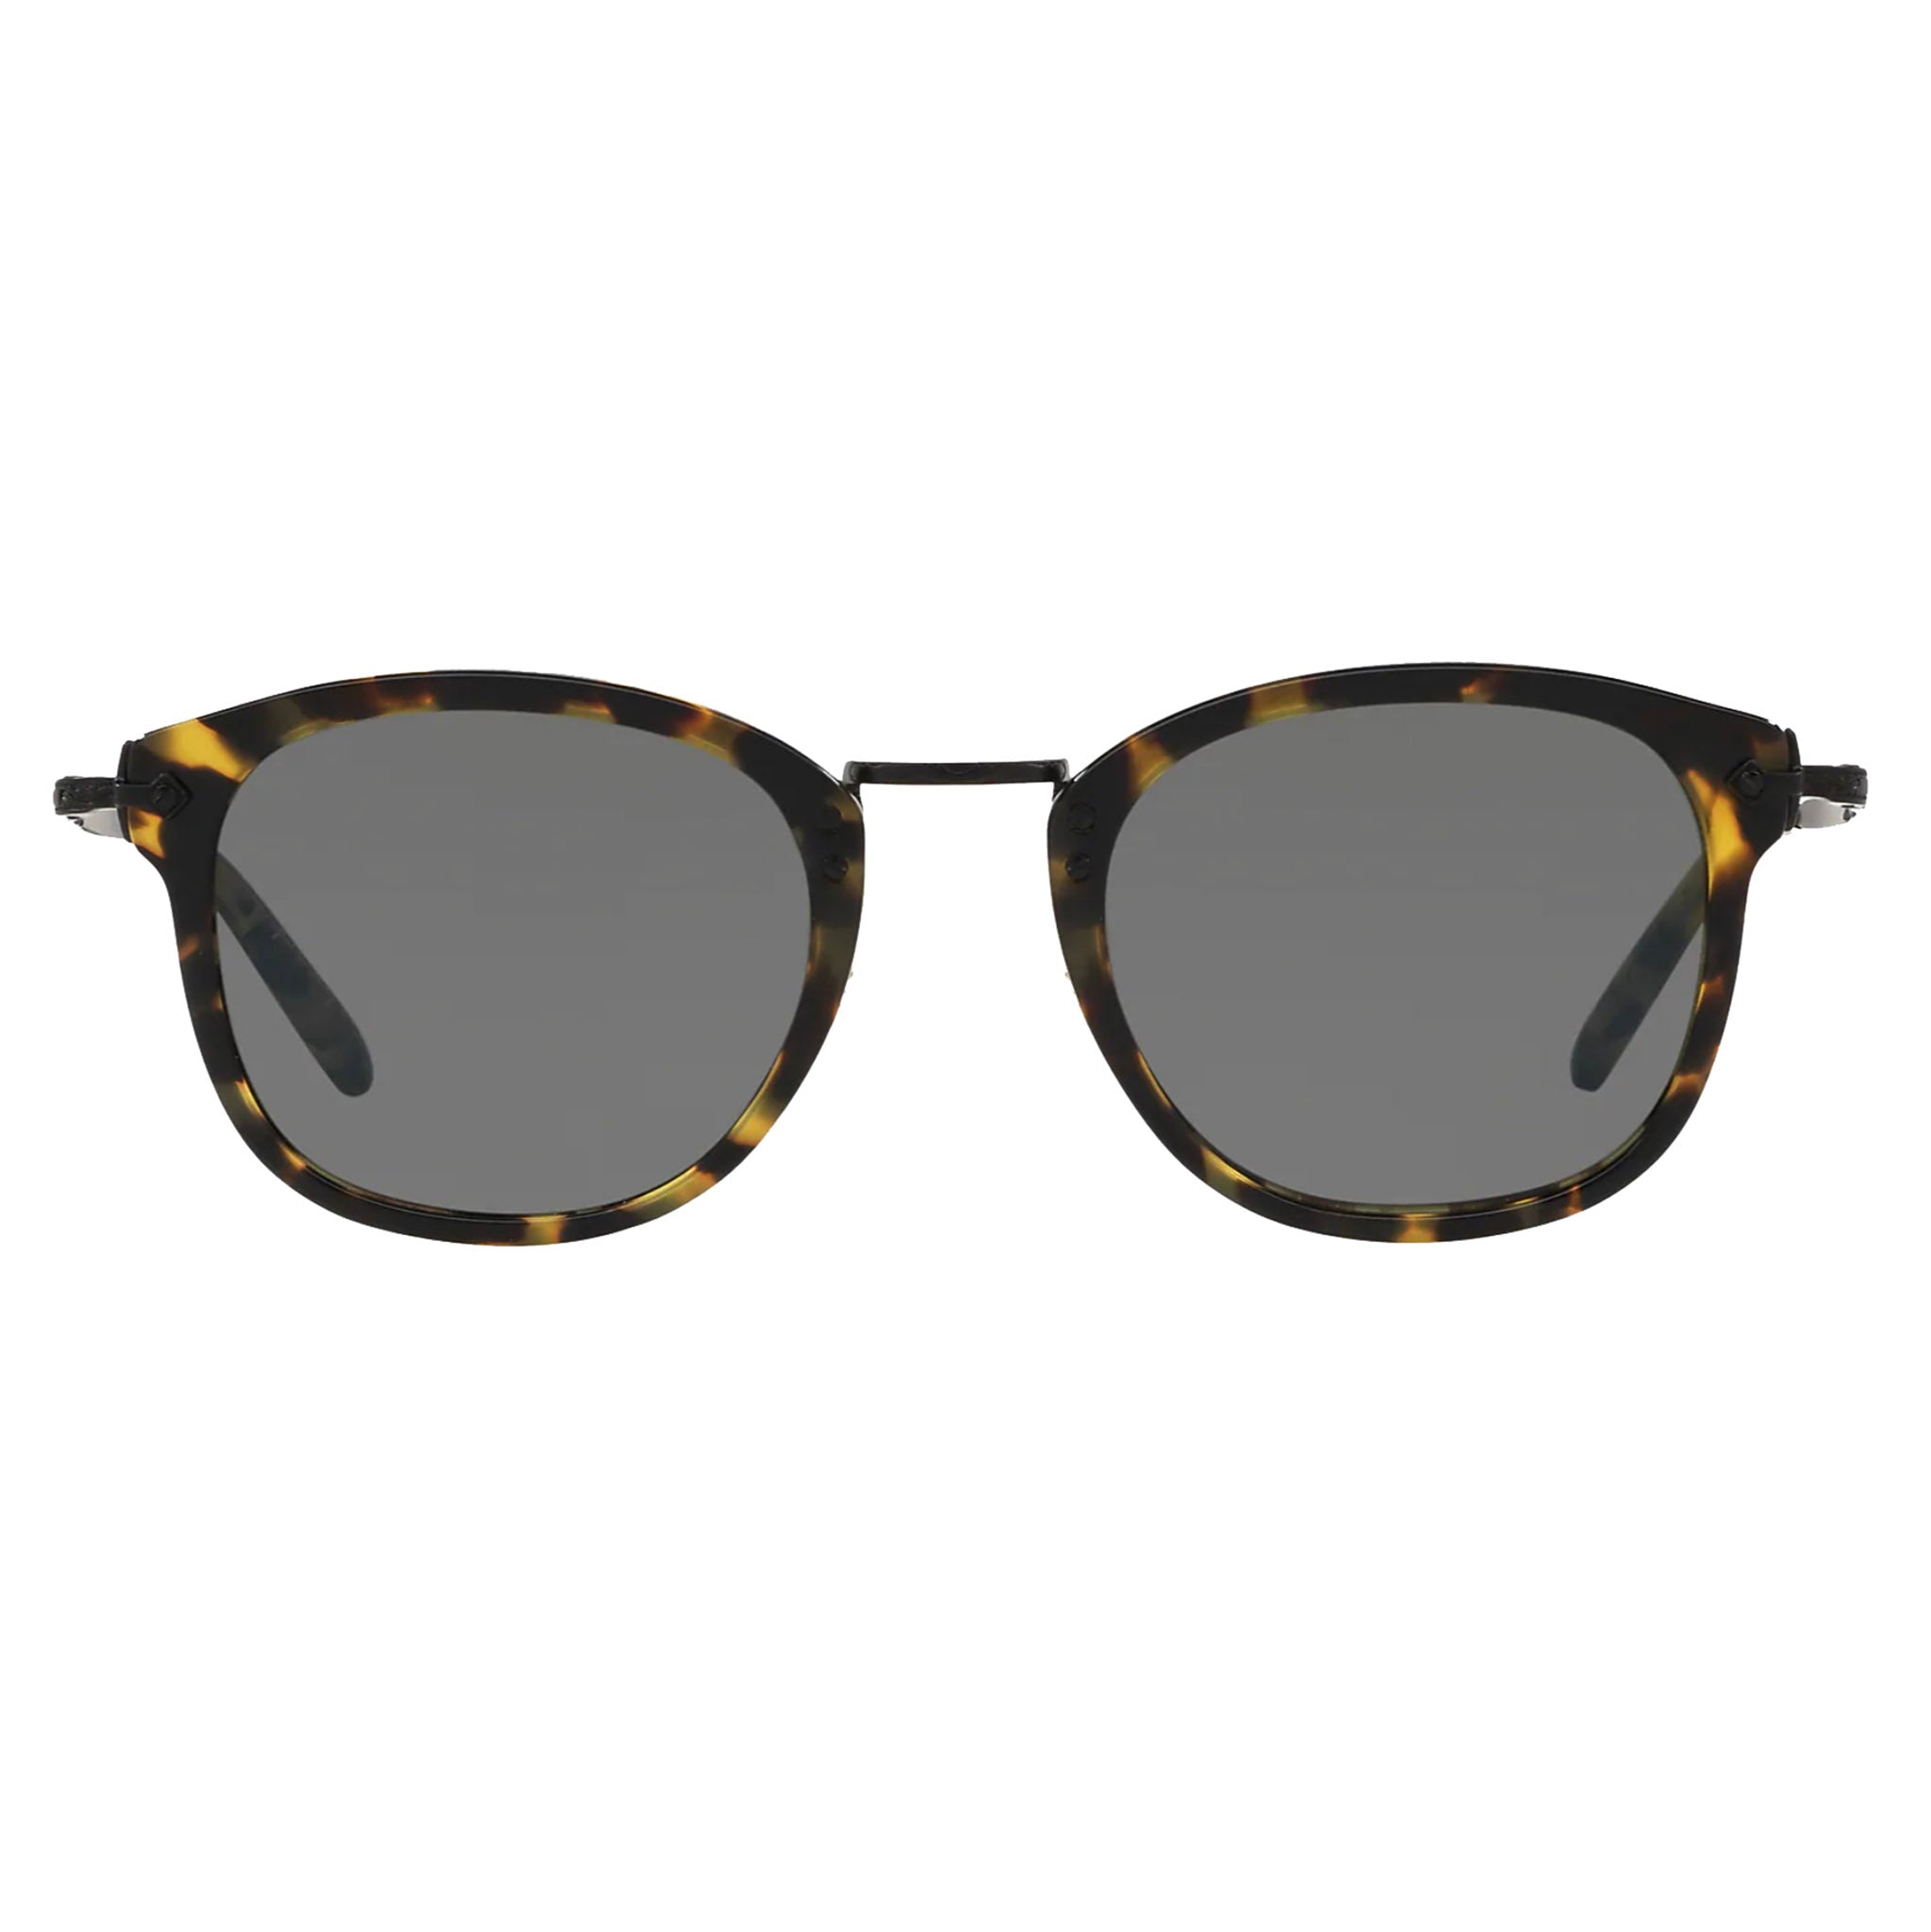 Oliver Peoples OP-506 Sun DTBK Matte Black with Carbon Grey Sunglasses